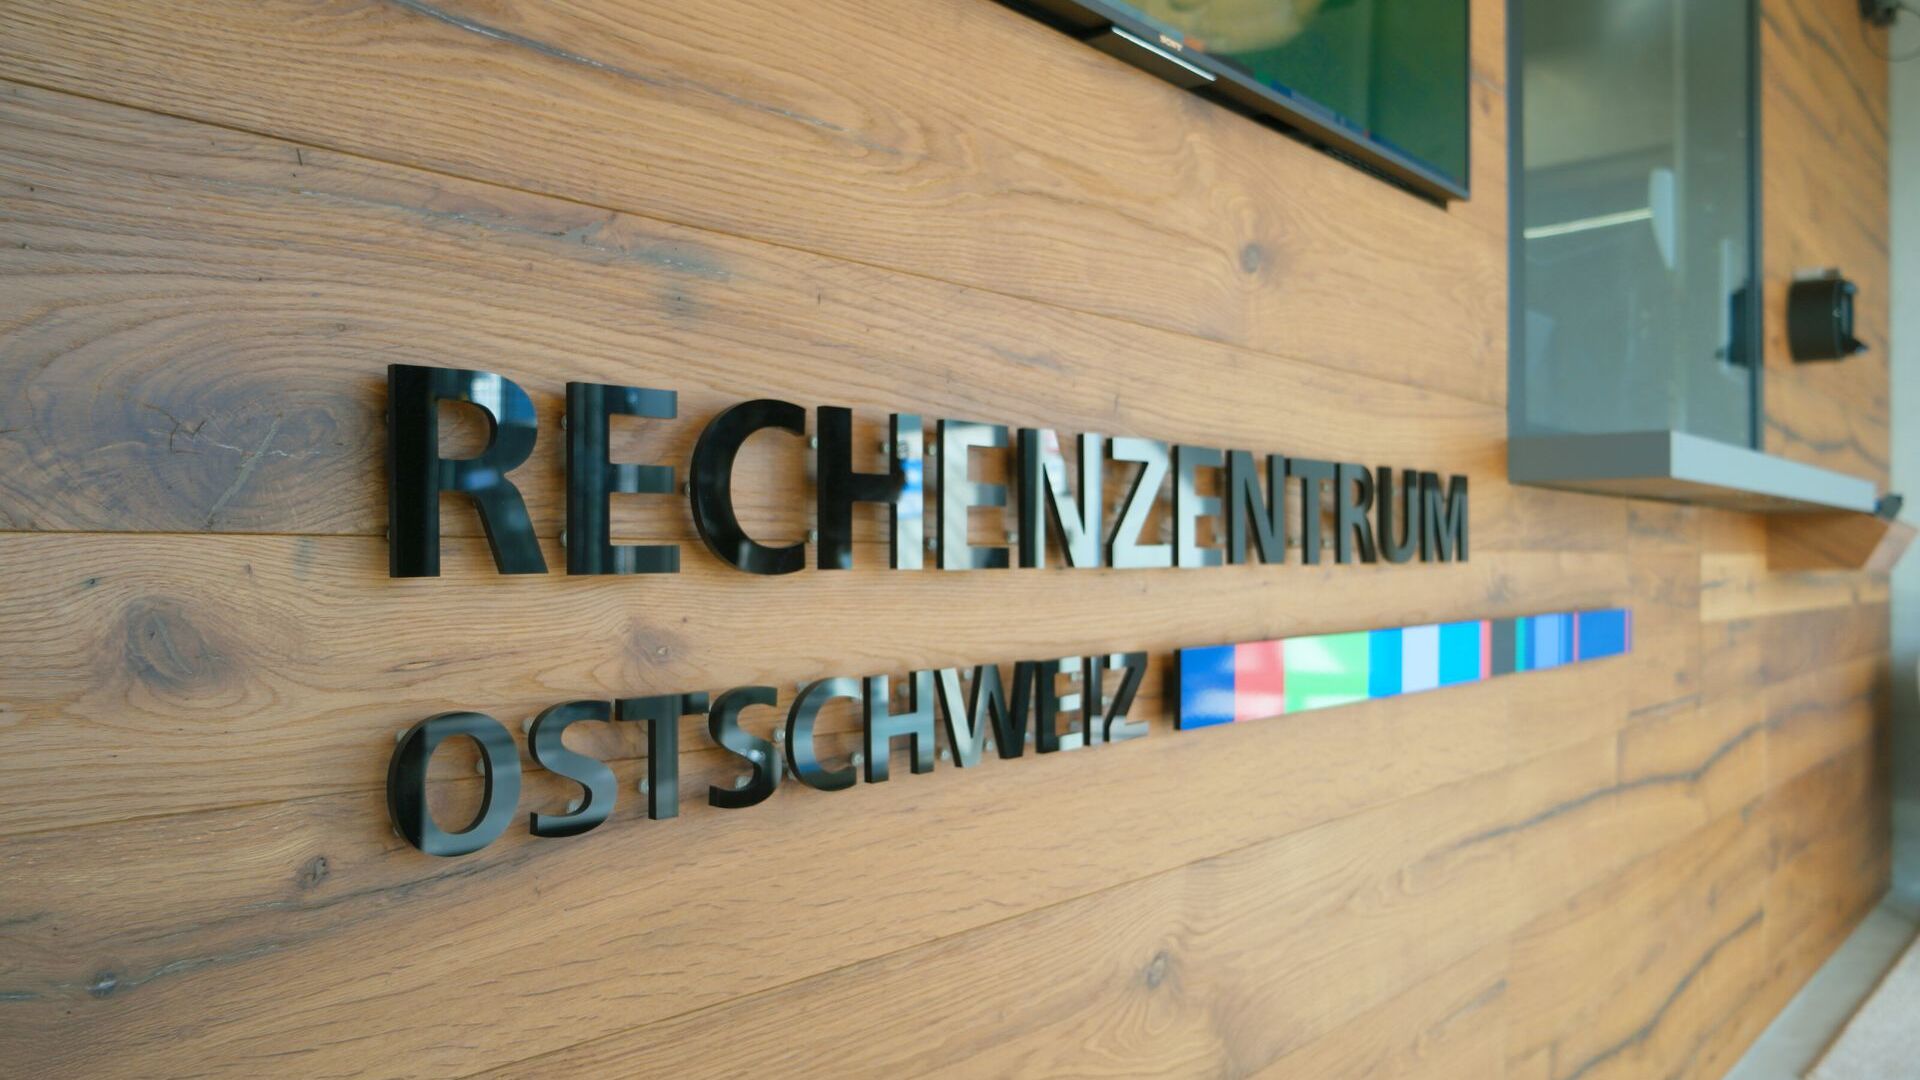 Den indre inngangen og porthuset til Rechenzentrum Ostschweiz i Gais i Appenzell Ausserrhoden